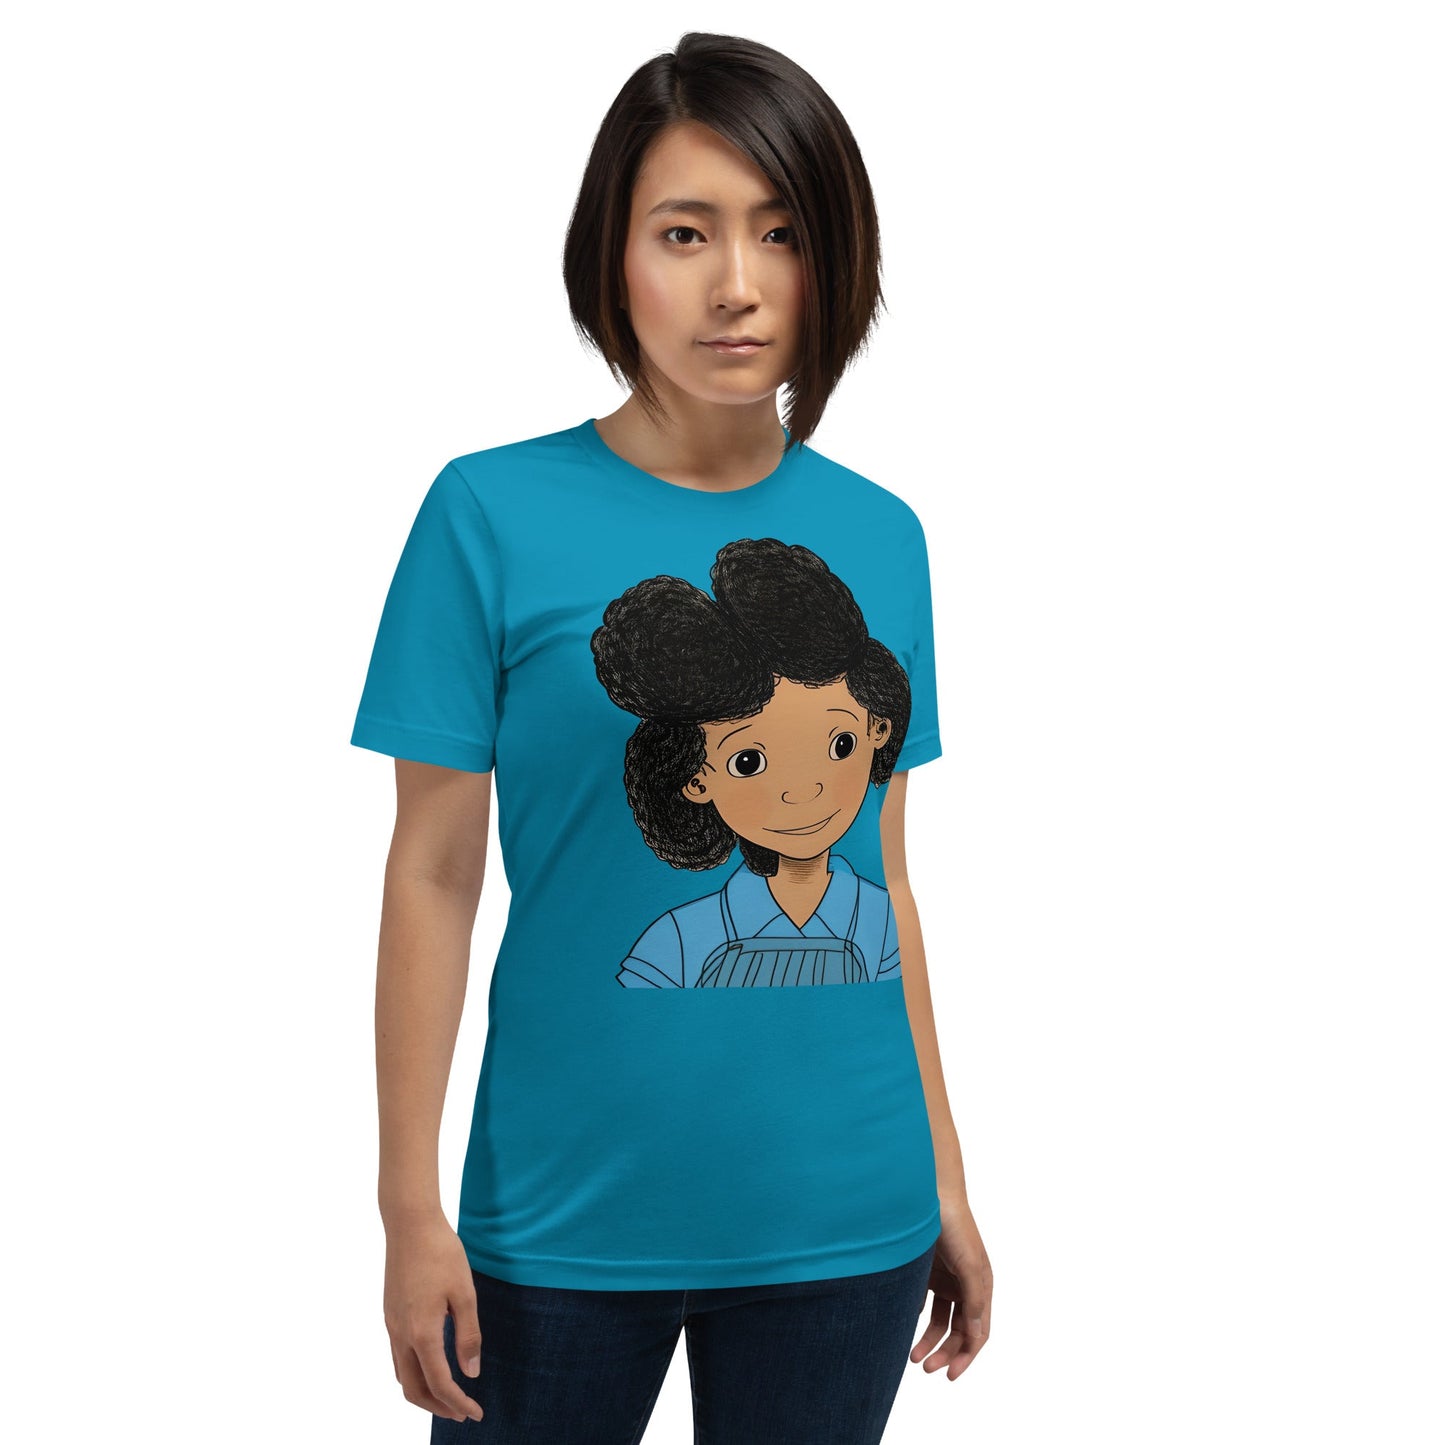 My Blue Girl Art T-shirt-Wearable art t-shirt-mysticalcherry